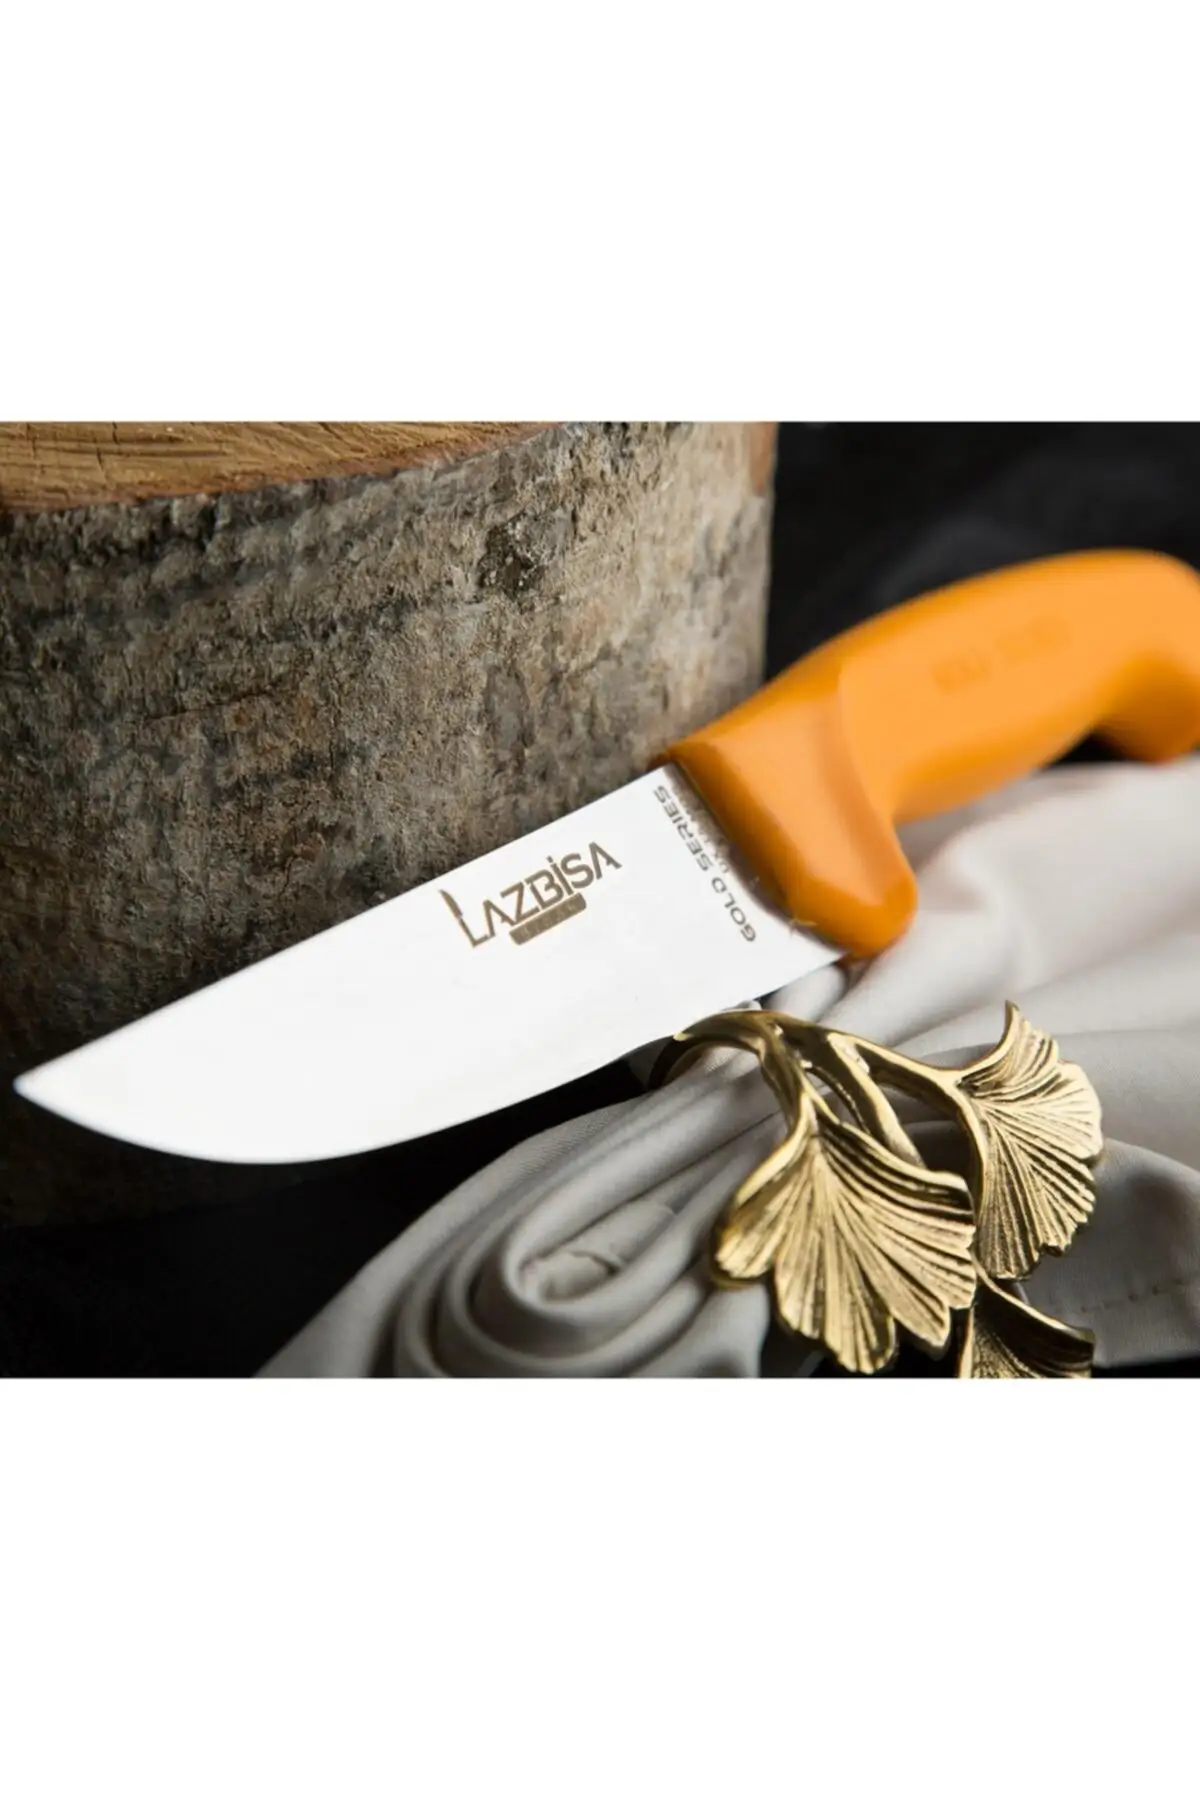 Lazbisa Kitchen Knife Set Meat Mincer Fruit Vegetable Butcher